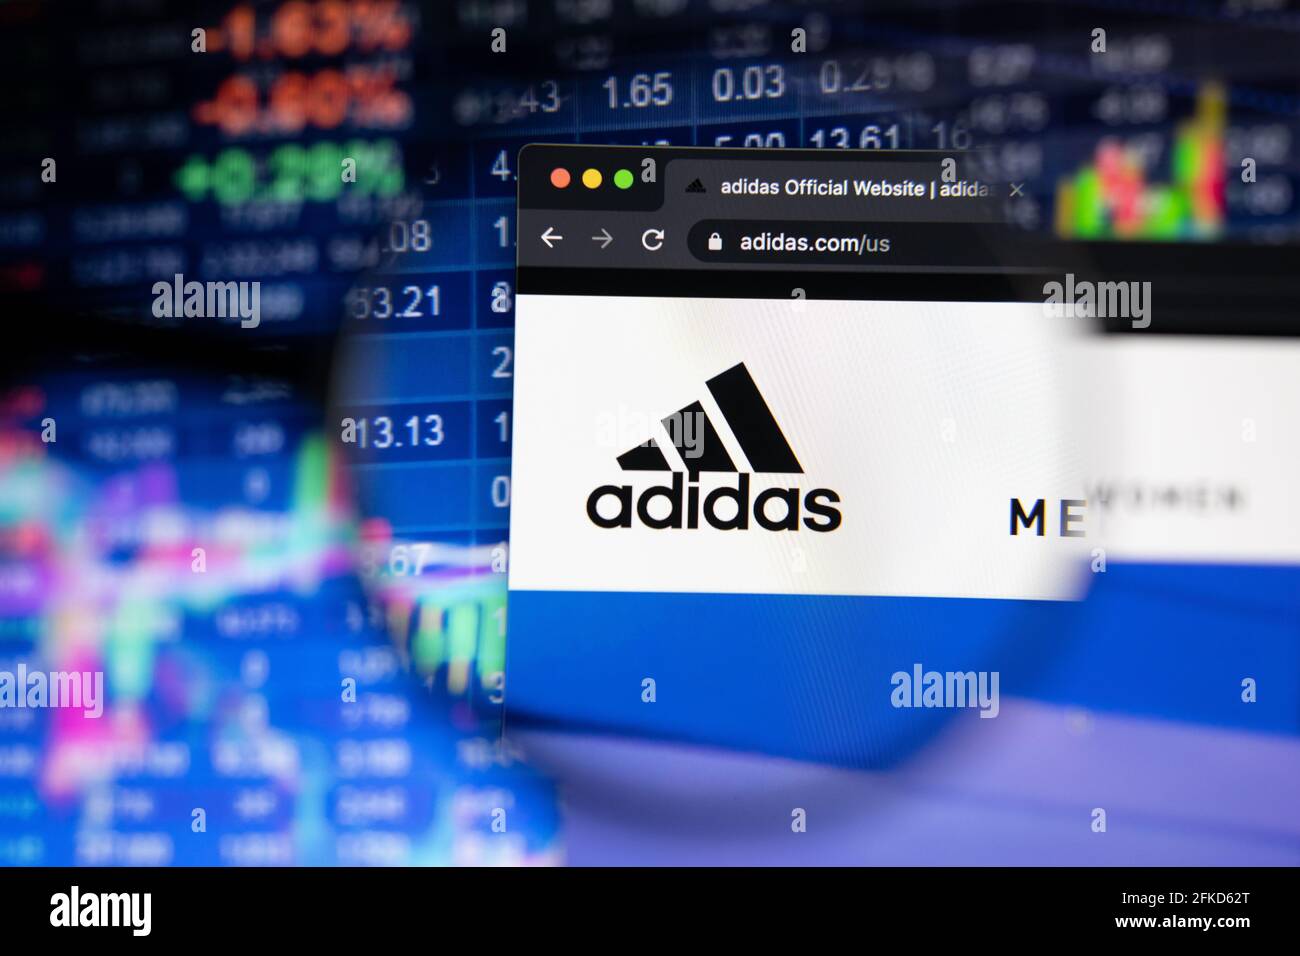 Logotipo de la empresa adidas un sitio web con la evolución borrosa del mercado de valores en el fondo, visto en una pantalla de ordenador a través de una lupa Fotografía